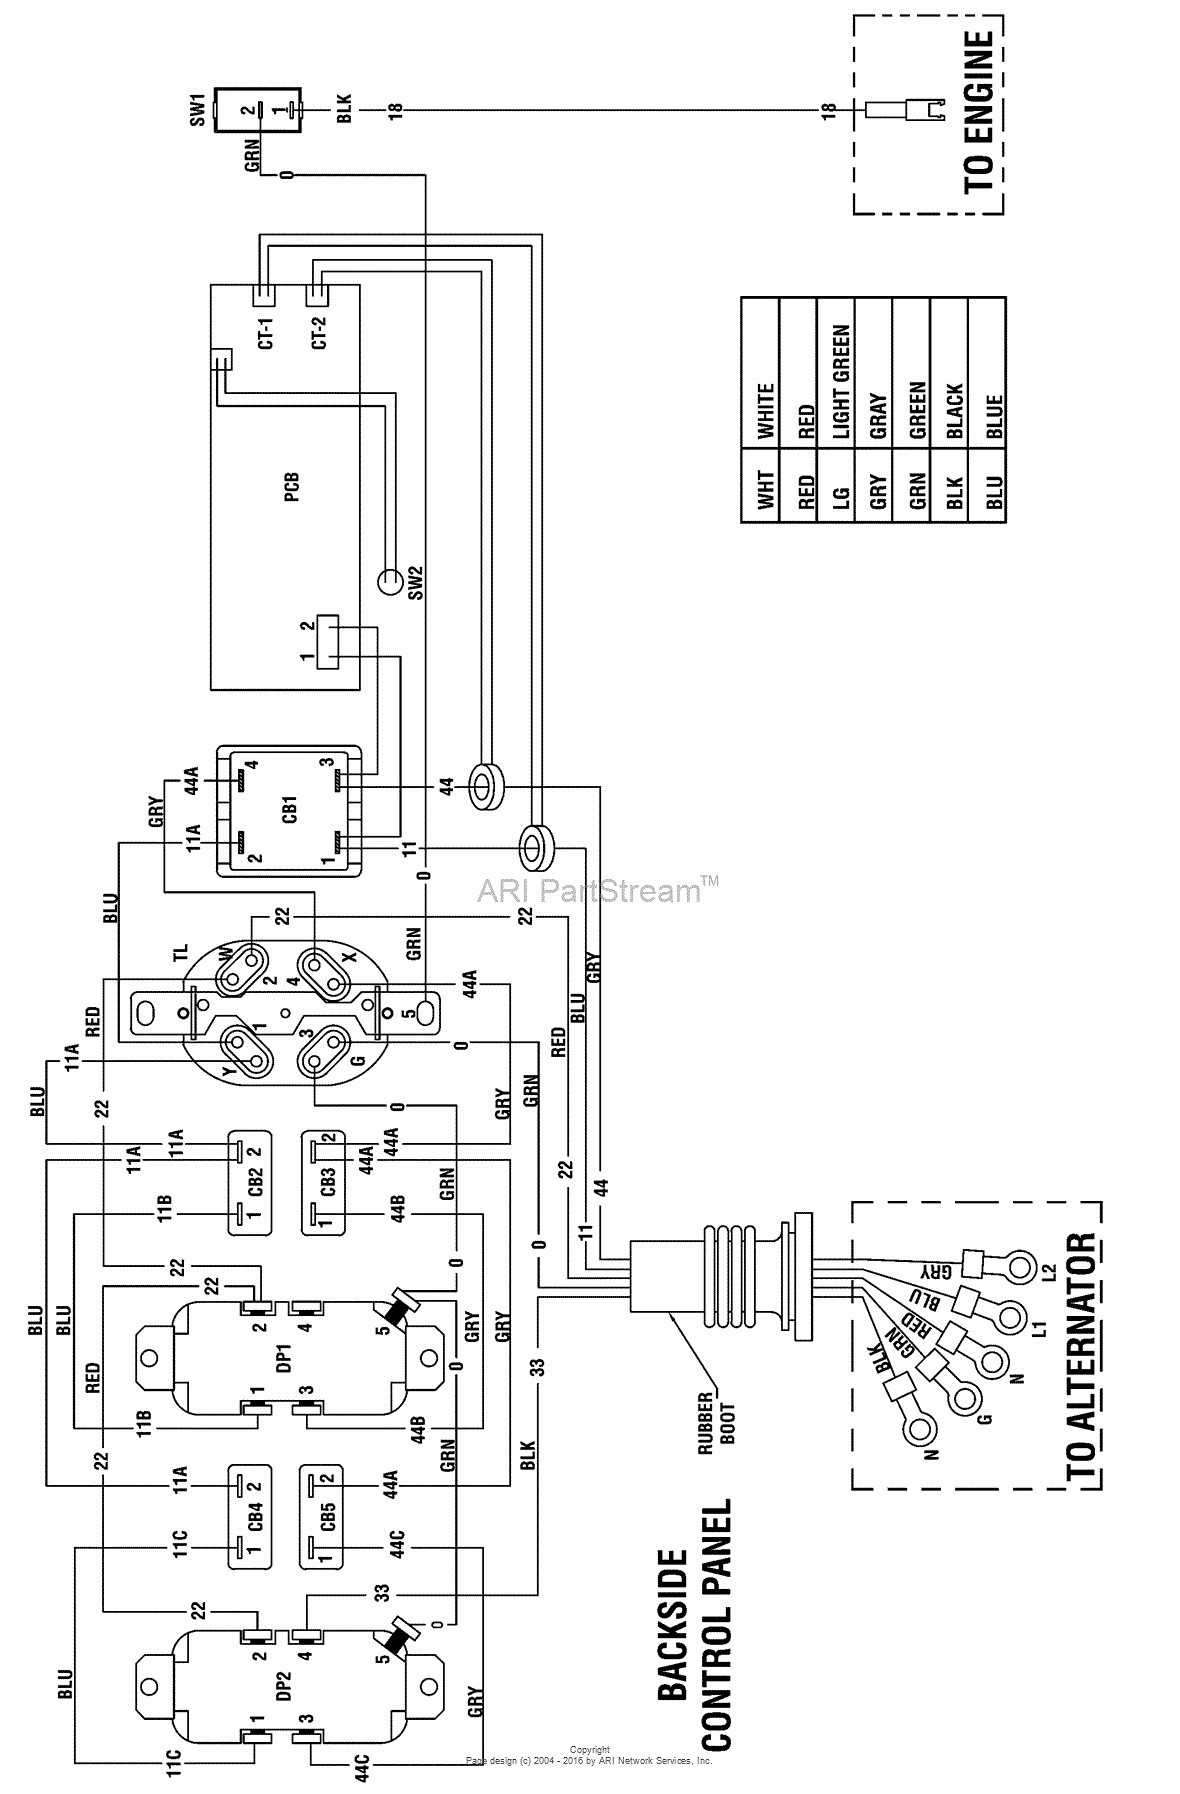 briggs stratton engine wiring diagram car tuning wire center u2022 rh botarena co